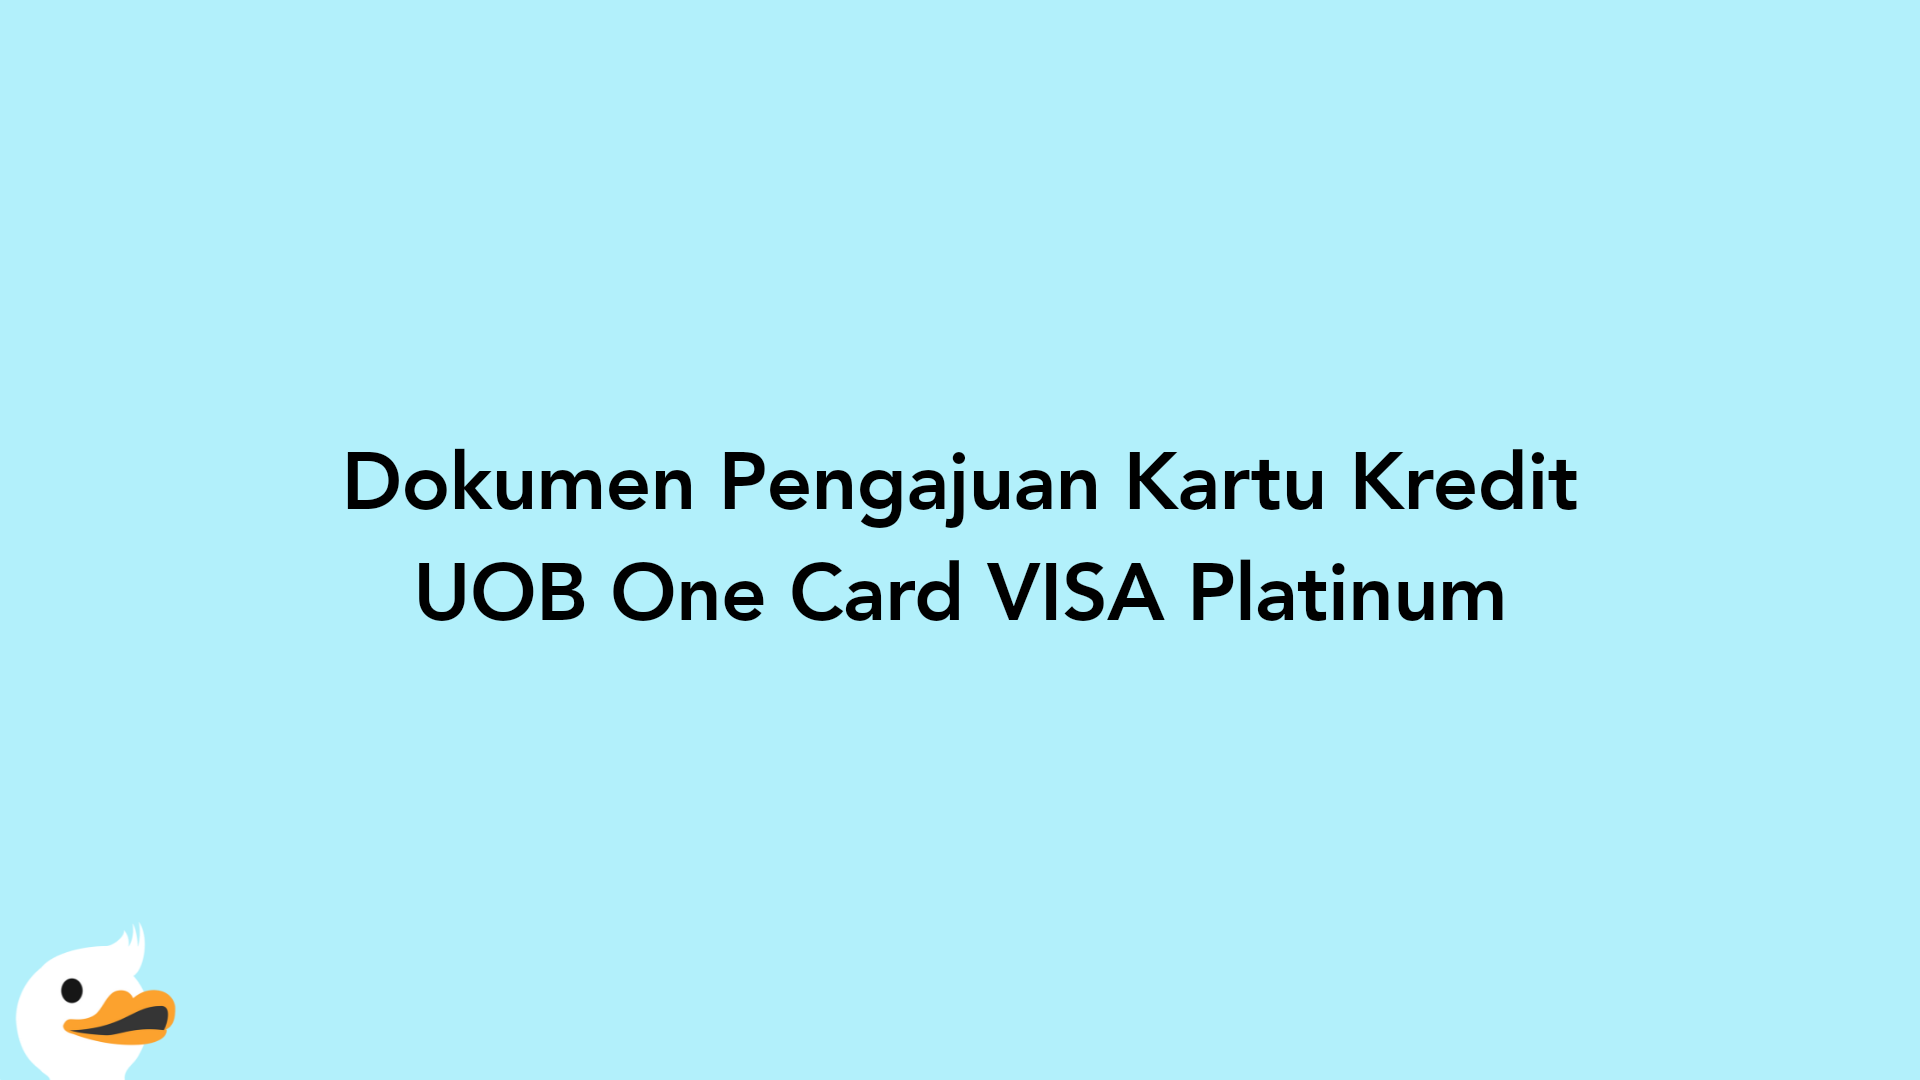 Dokumen Pengajuan Kartu Kredit UOB One Card VISA Platinum